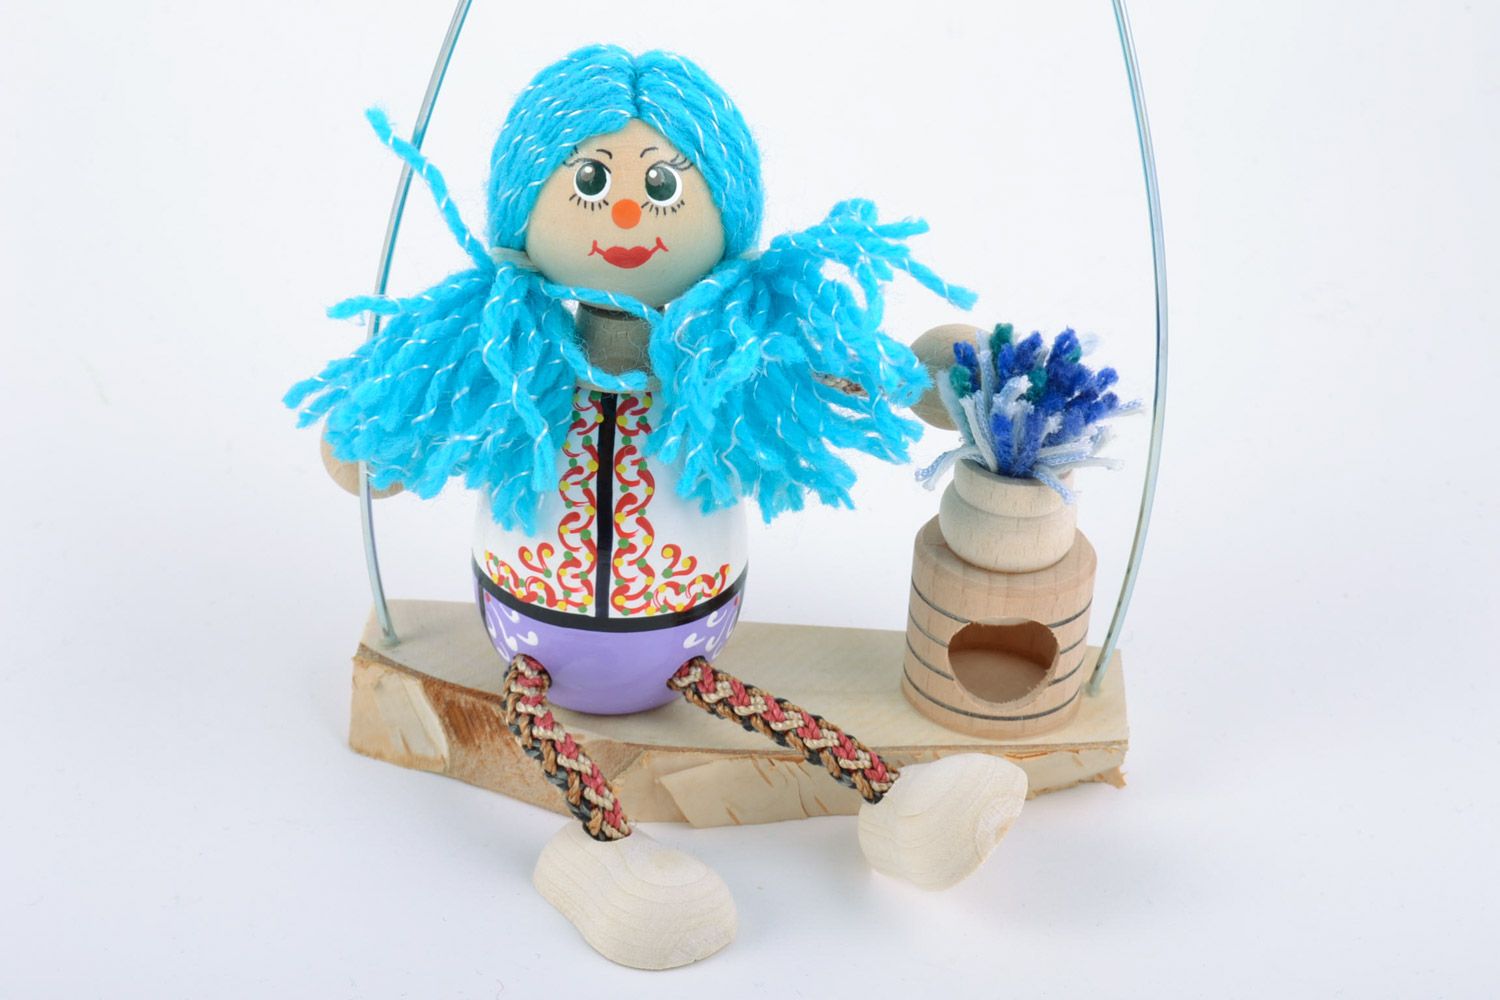 Holz Spielzeug Mädchen mit blauem Haar bemalt künstlerisch schön Handarbeit toll foto 4